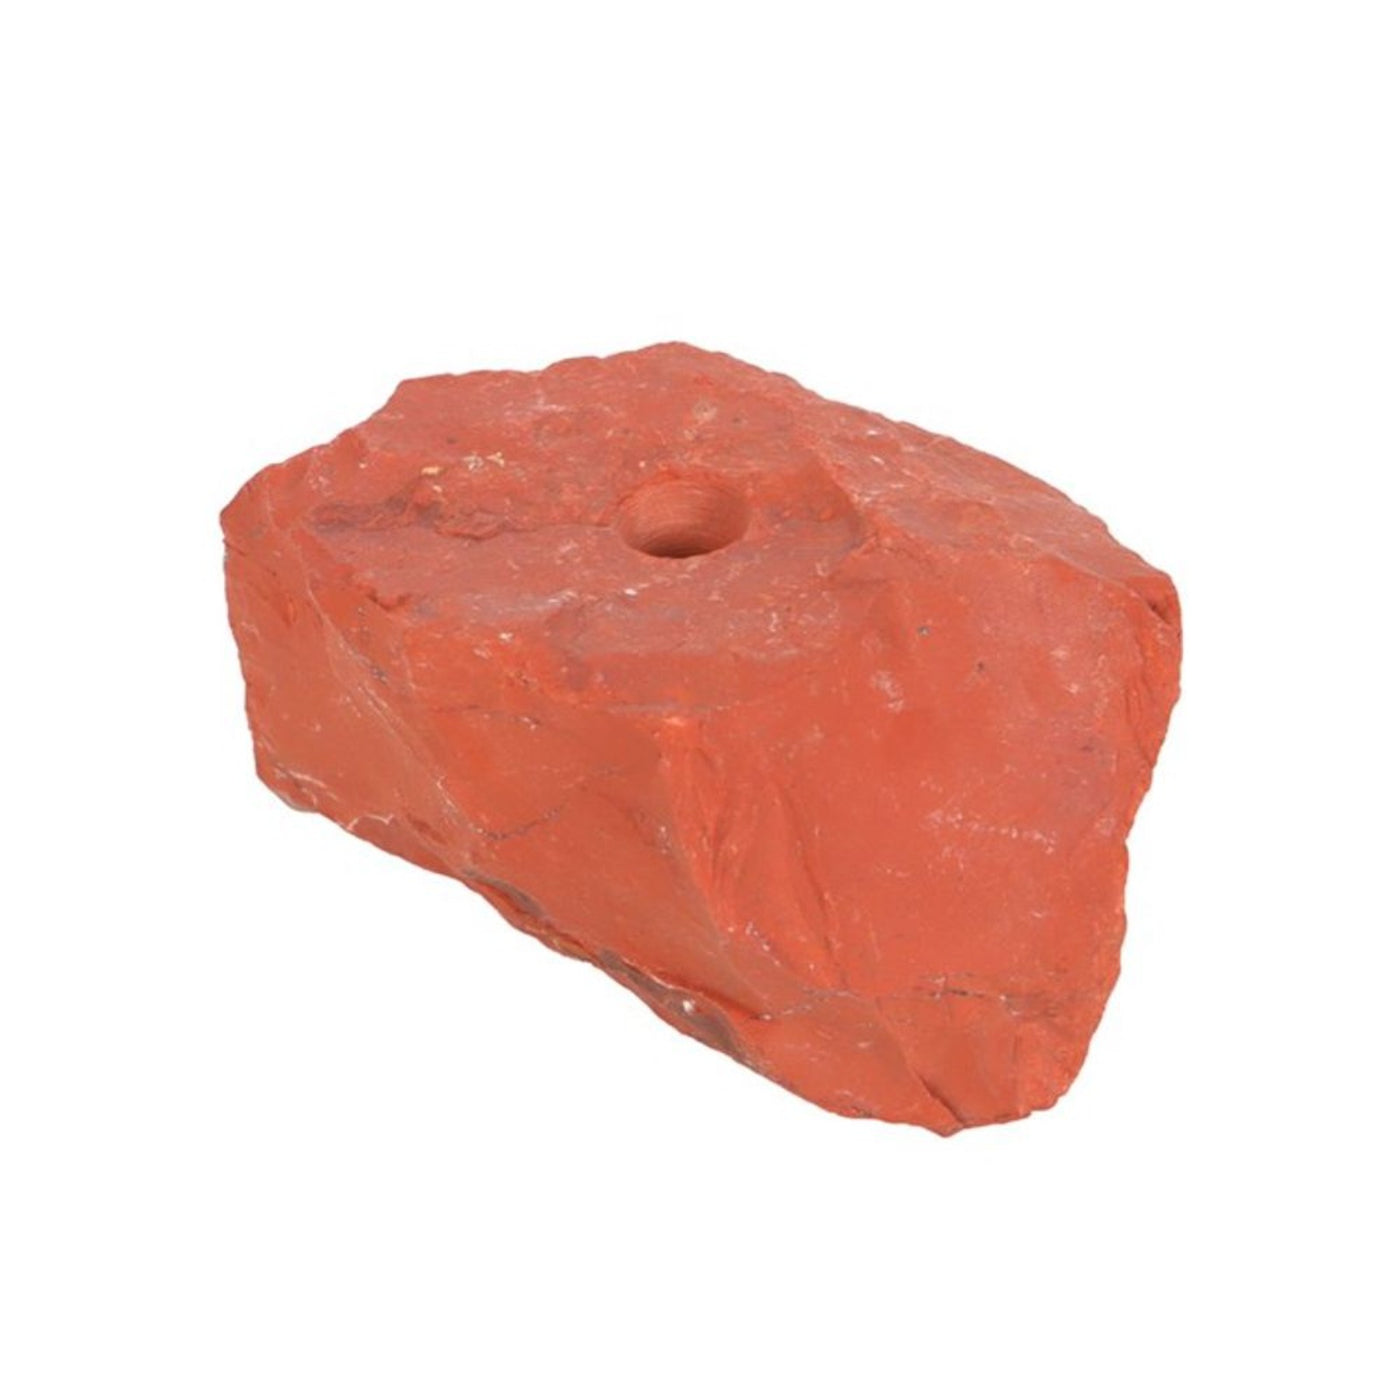 Red Jasper Natural Gemstone Rock Incense Stick Holder.